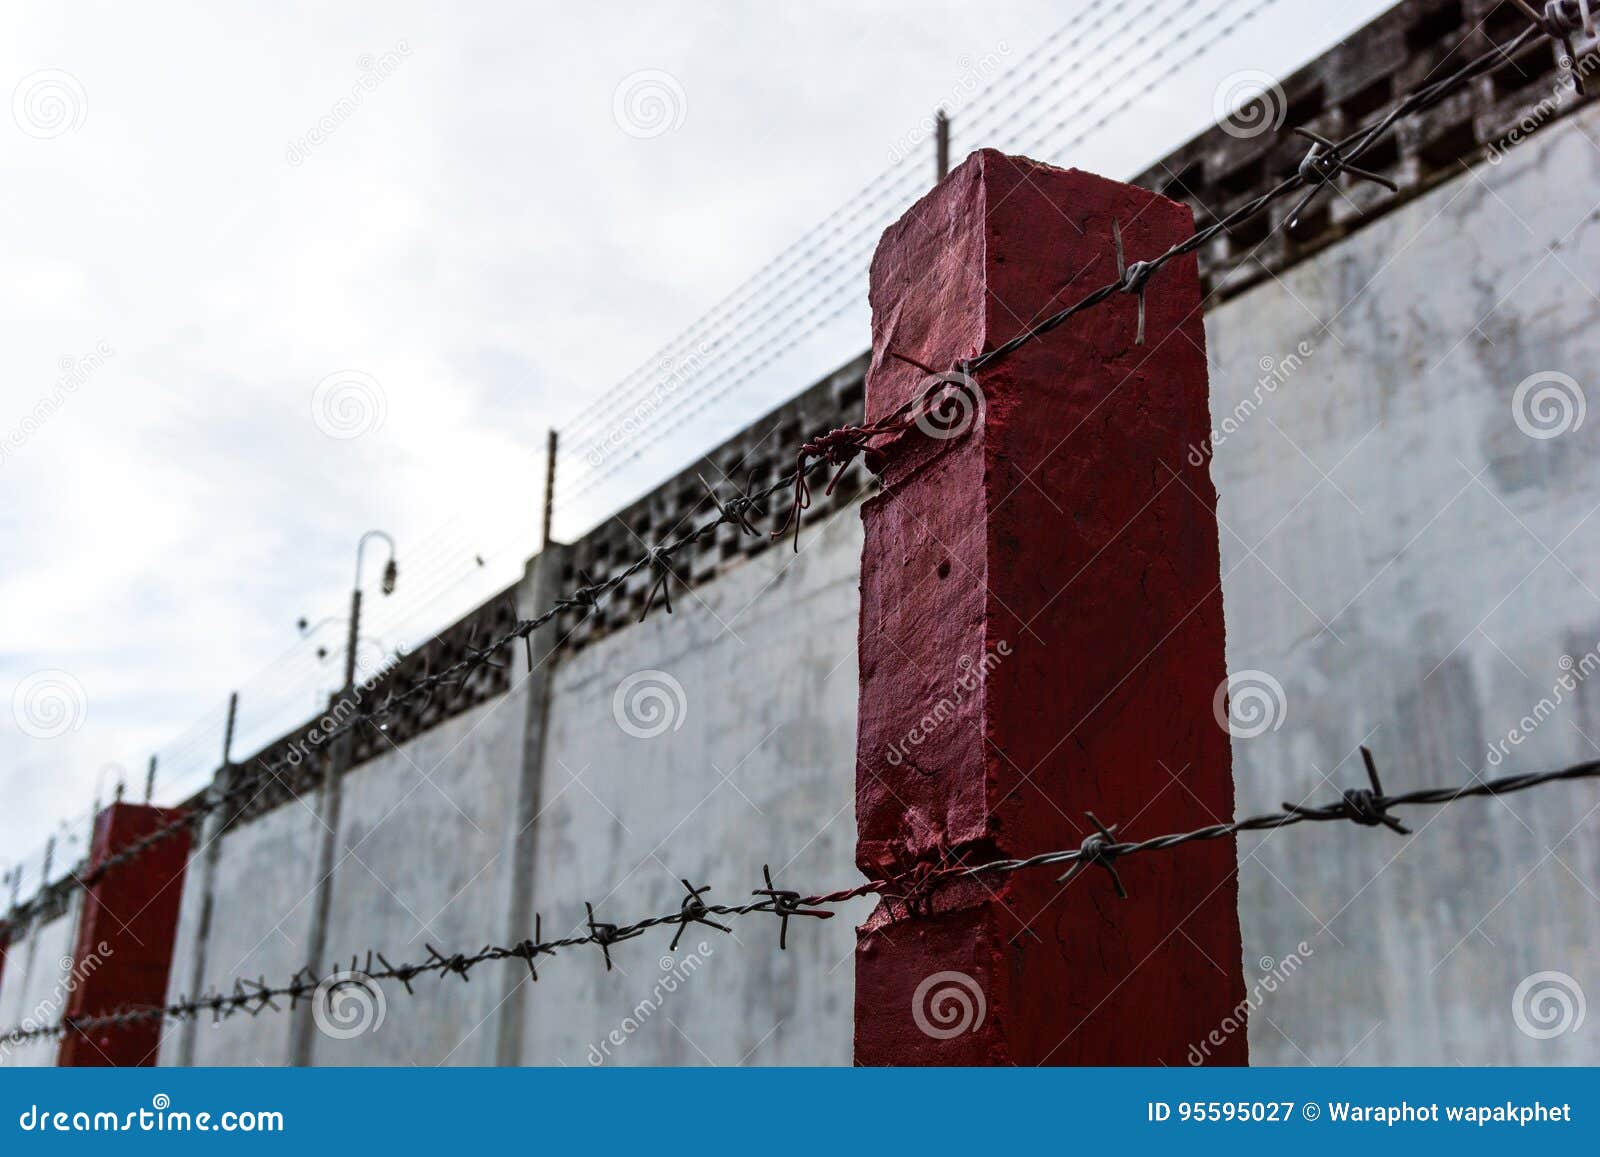 walls, fences, prisons, prisoners,